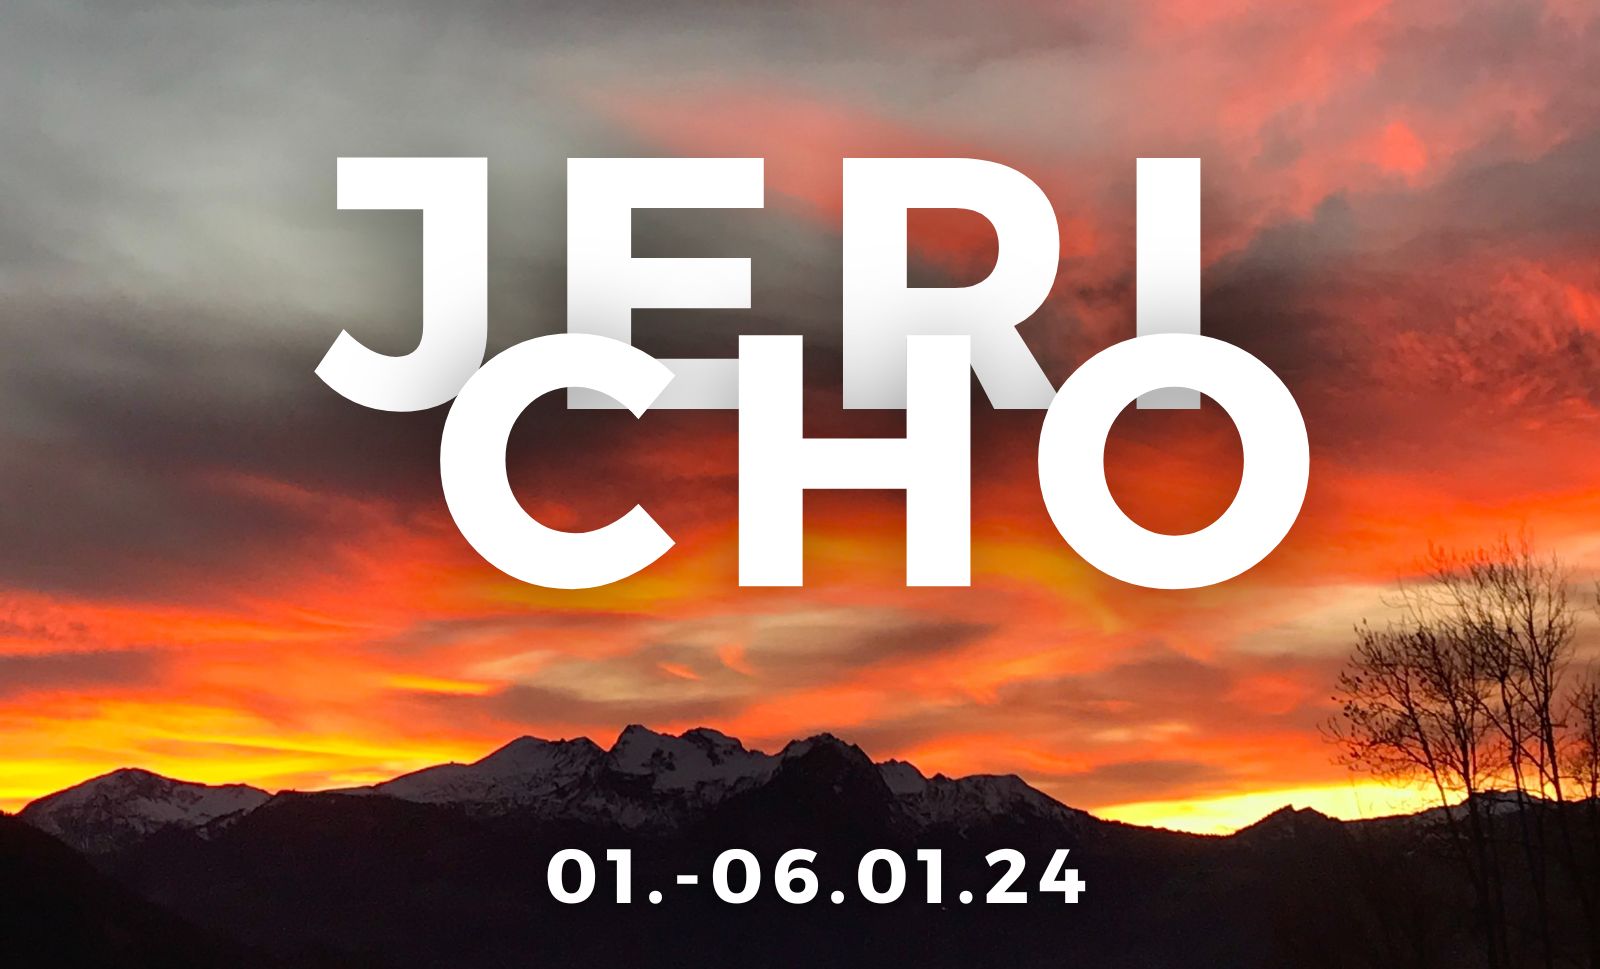 Jericho 24 (1600 × 969 px)